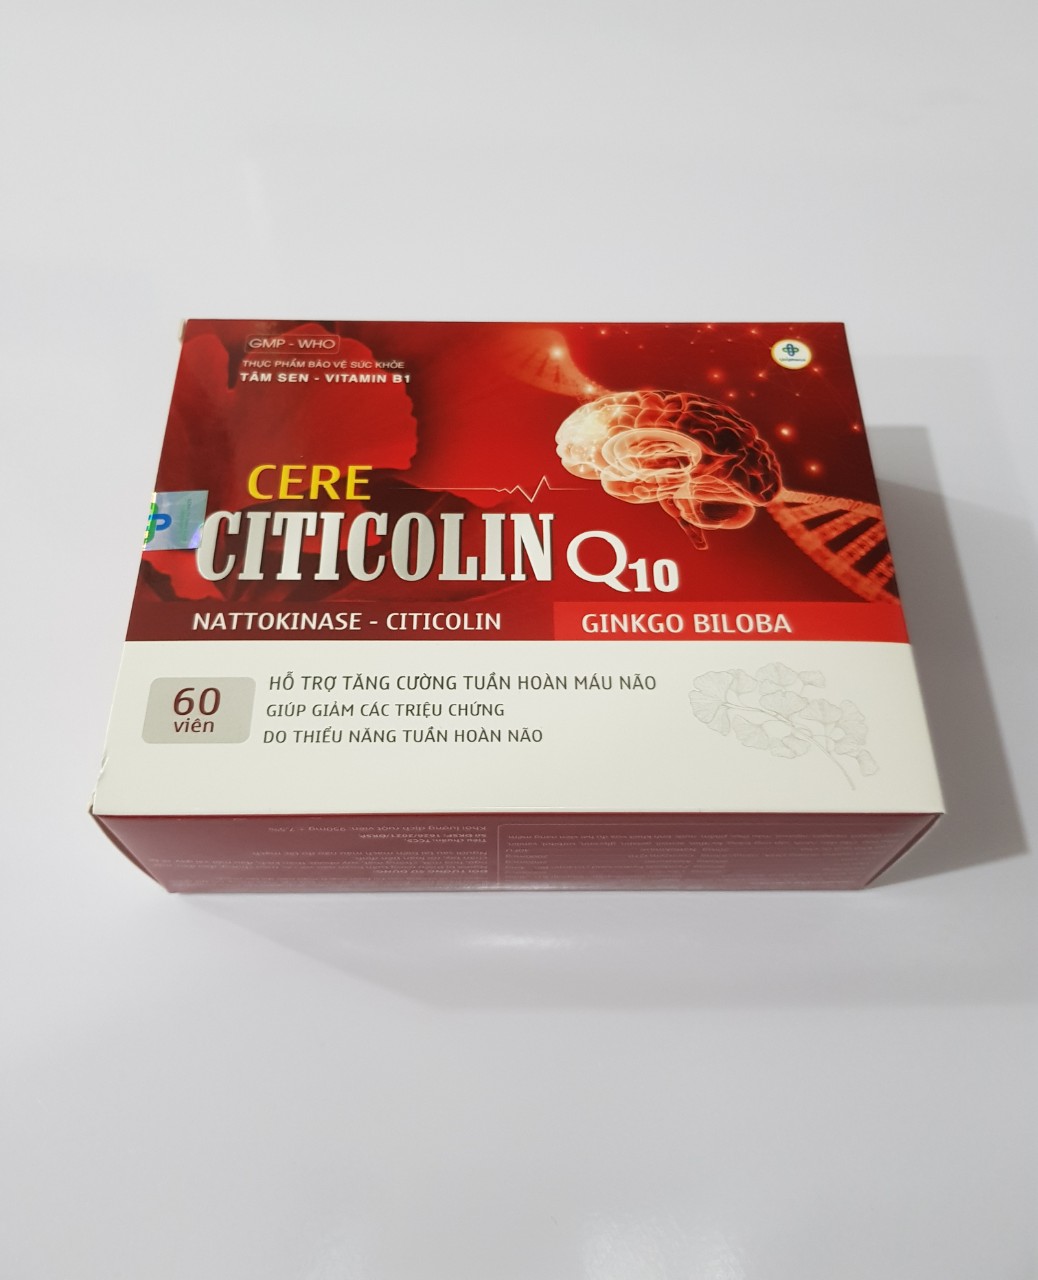 Cere Citicolin Q10: Hỗ trợ tăng cường tuần hoàn máu não